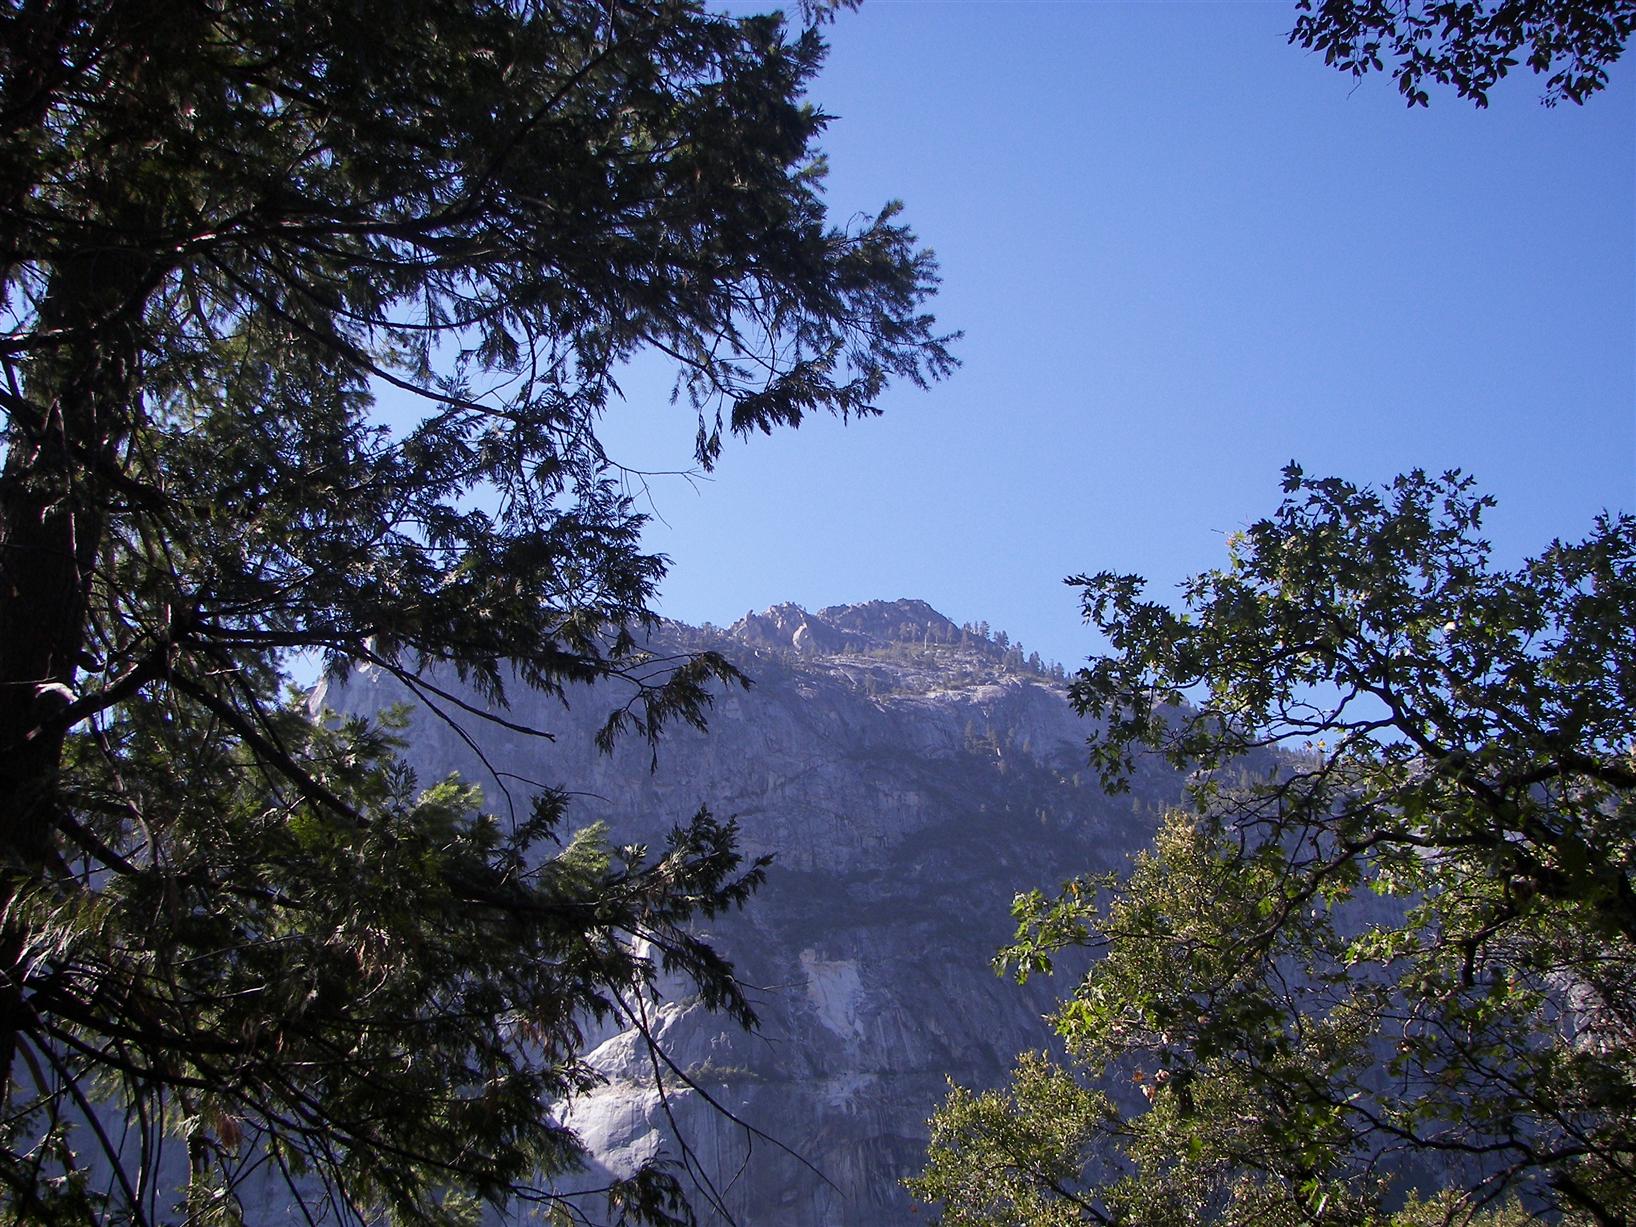 Creek in Yosemite National Park